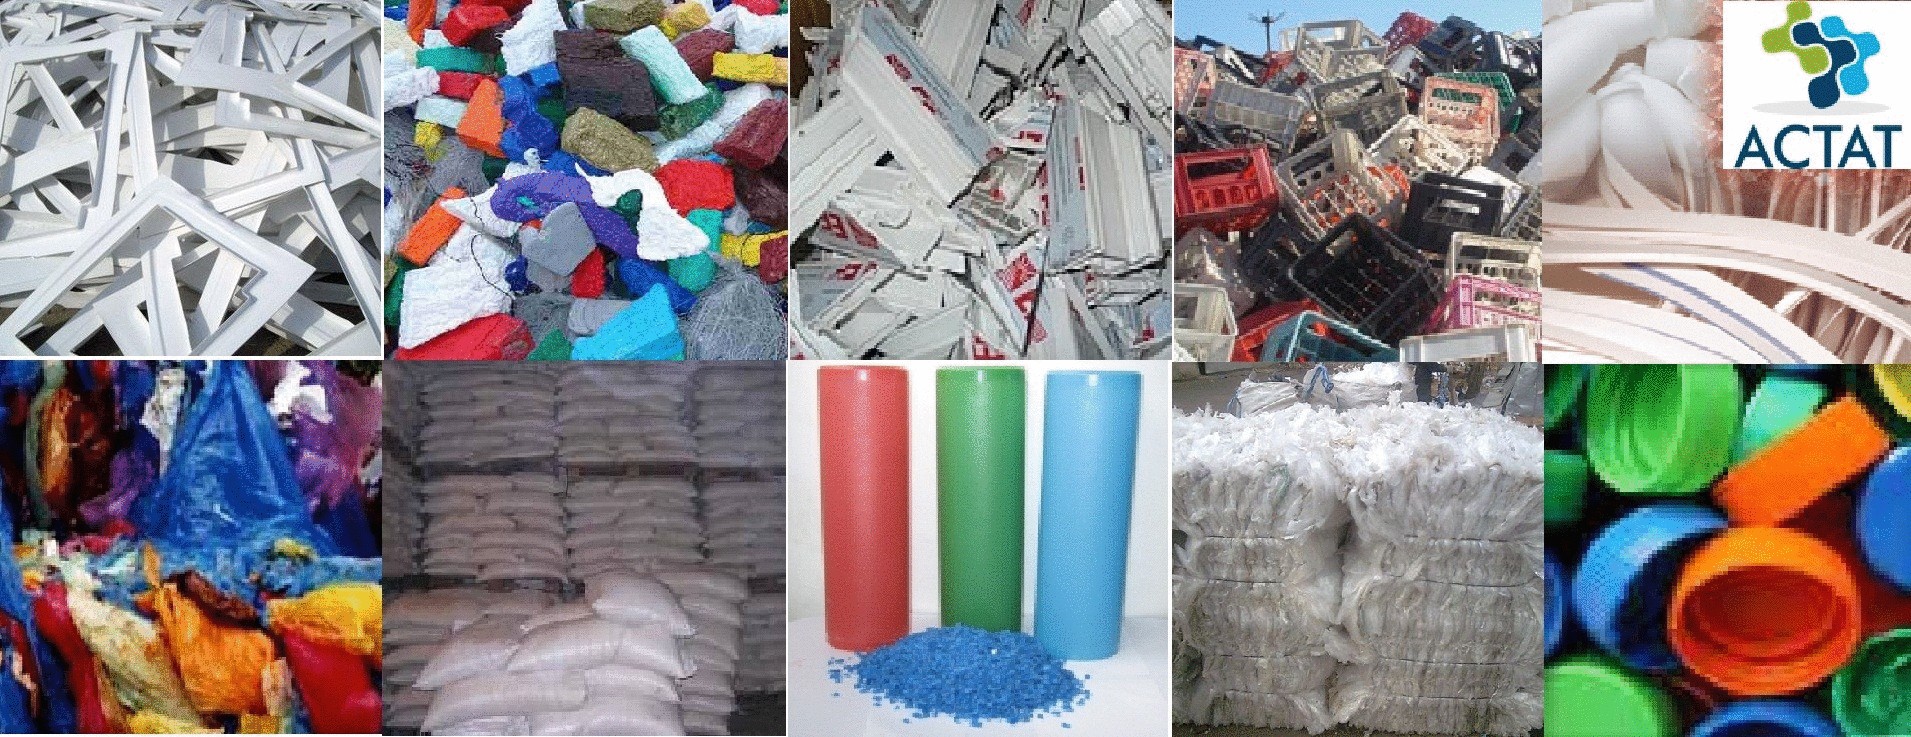 В Италии переработка пластмасс переживает бум